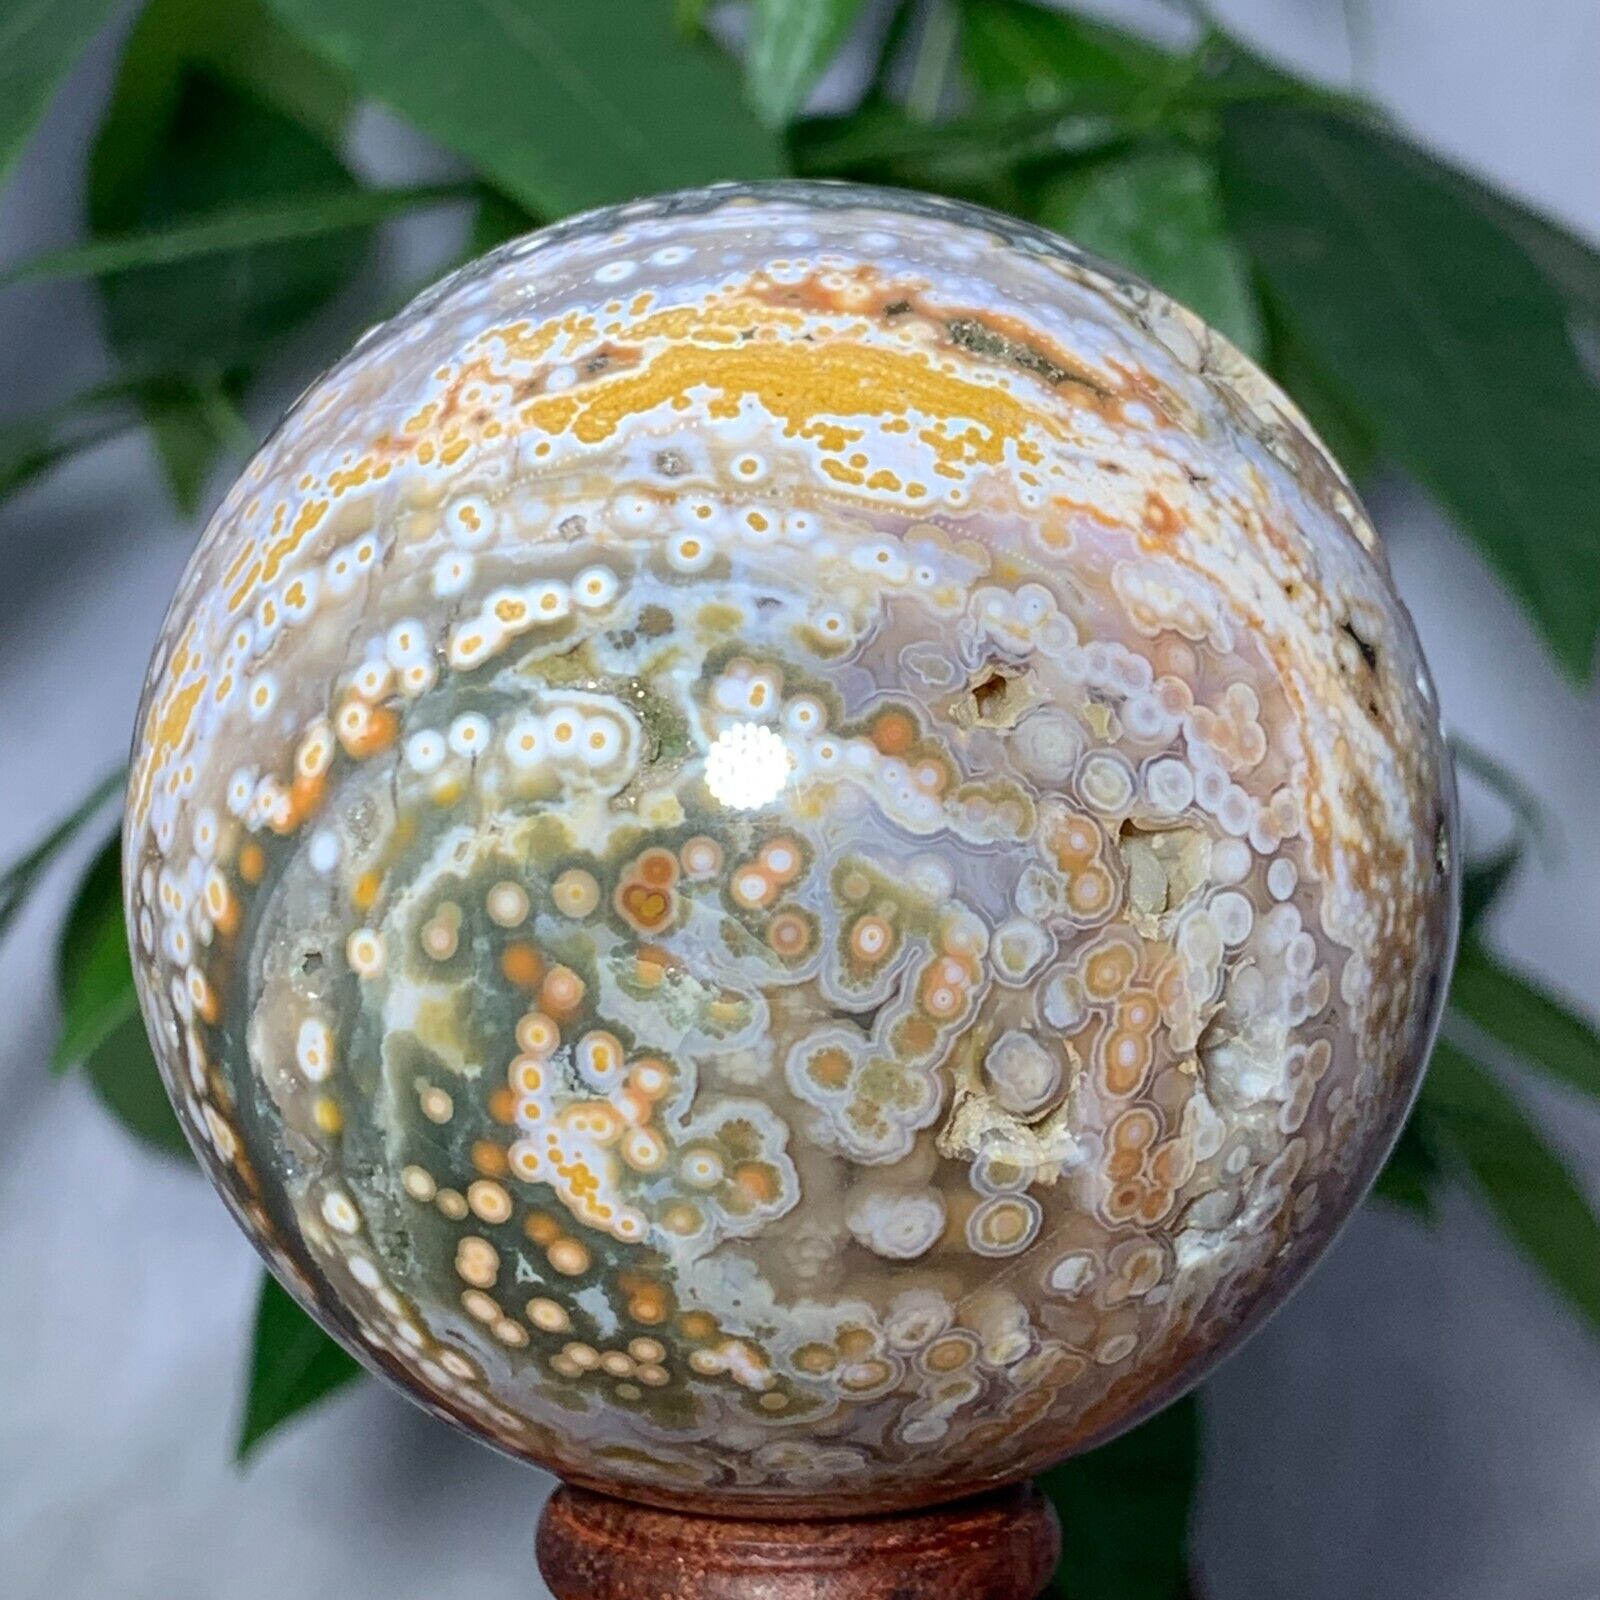 443g Rare Natural Ocean Jasper Sphere Quartz Crystal Ball Reiki Stone